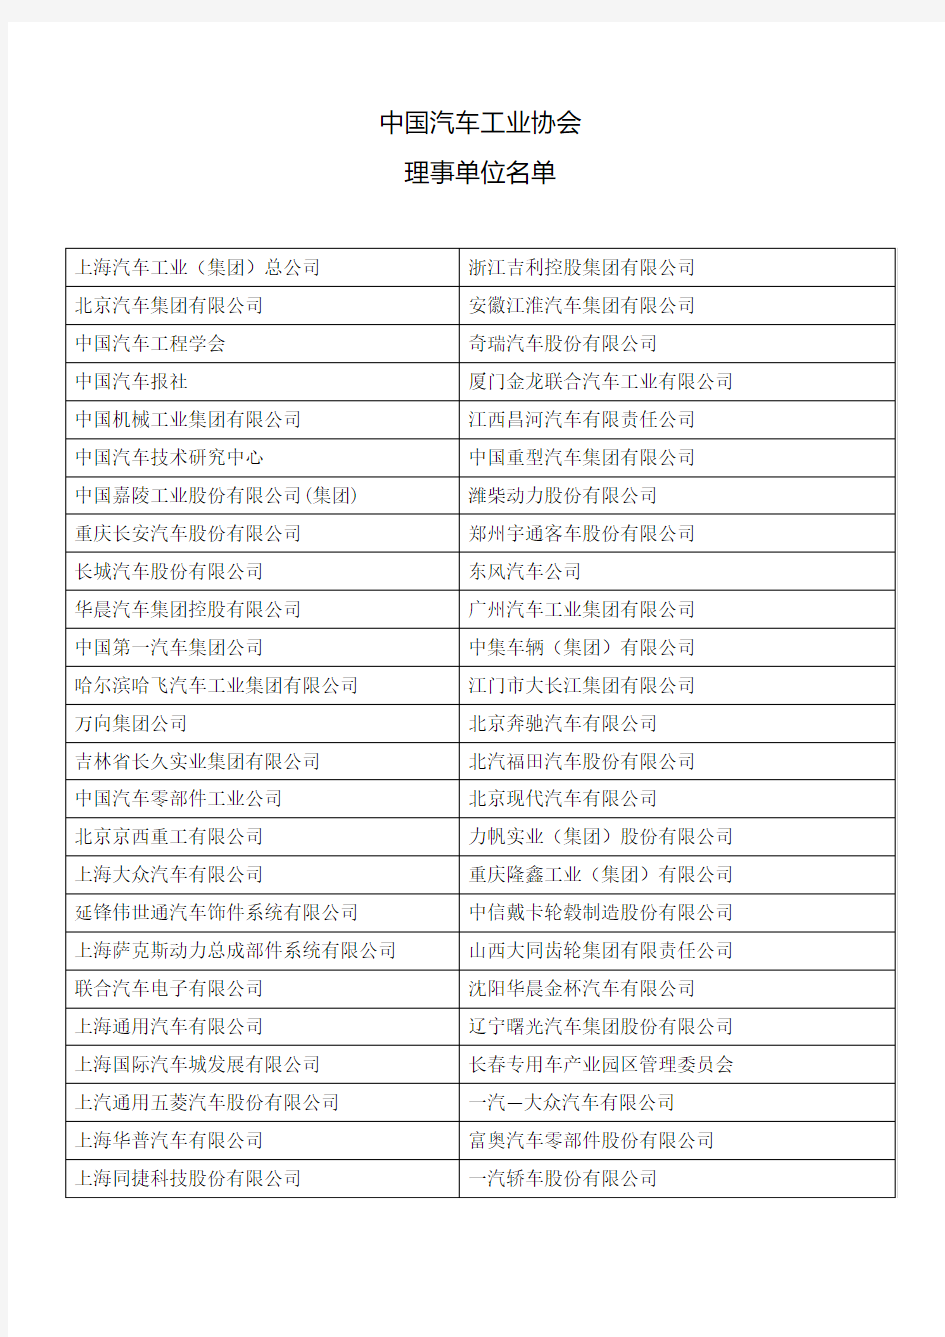 中国汽车工业协会理事名单